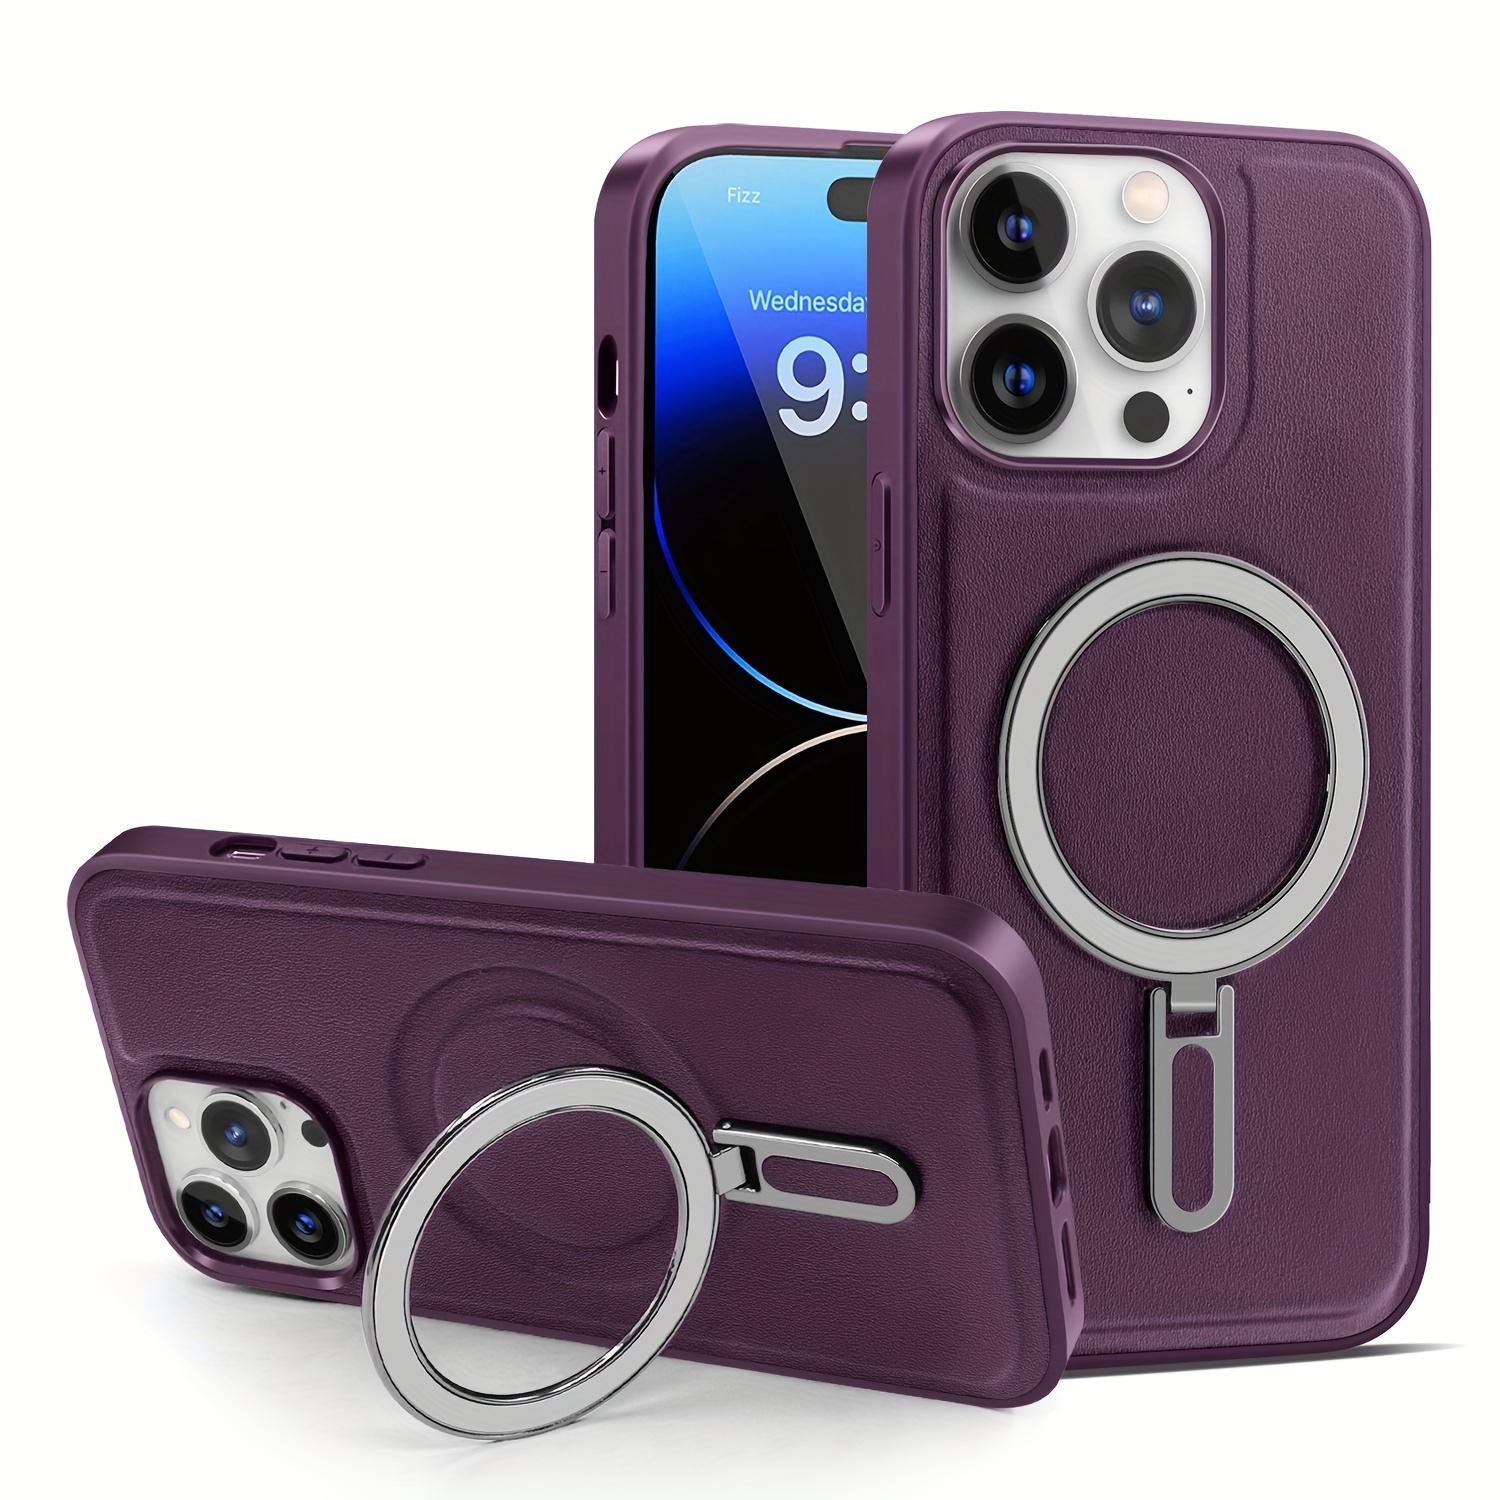  Funda magnética compatible con iPhone 12 Mini con purpurina,  compatible con MagSafe Charger para mujeres y niñas, funda protectora de  cuerpo completo a prueba de golpes para iPhone 12 mini de